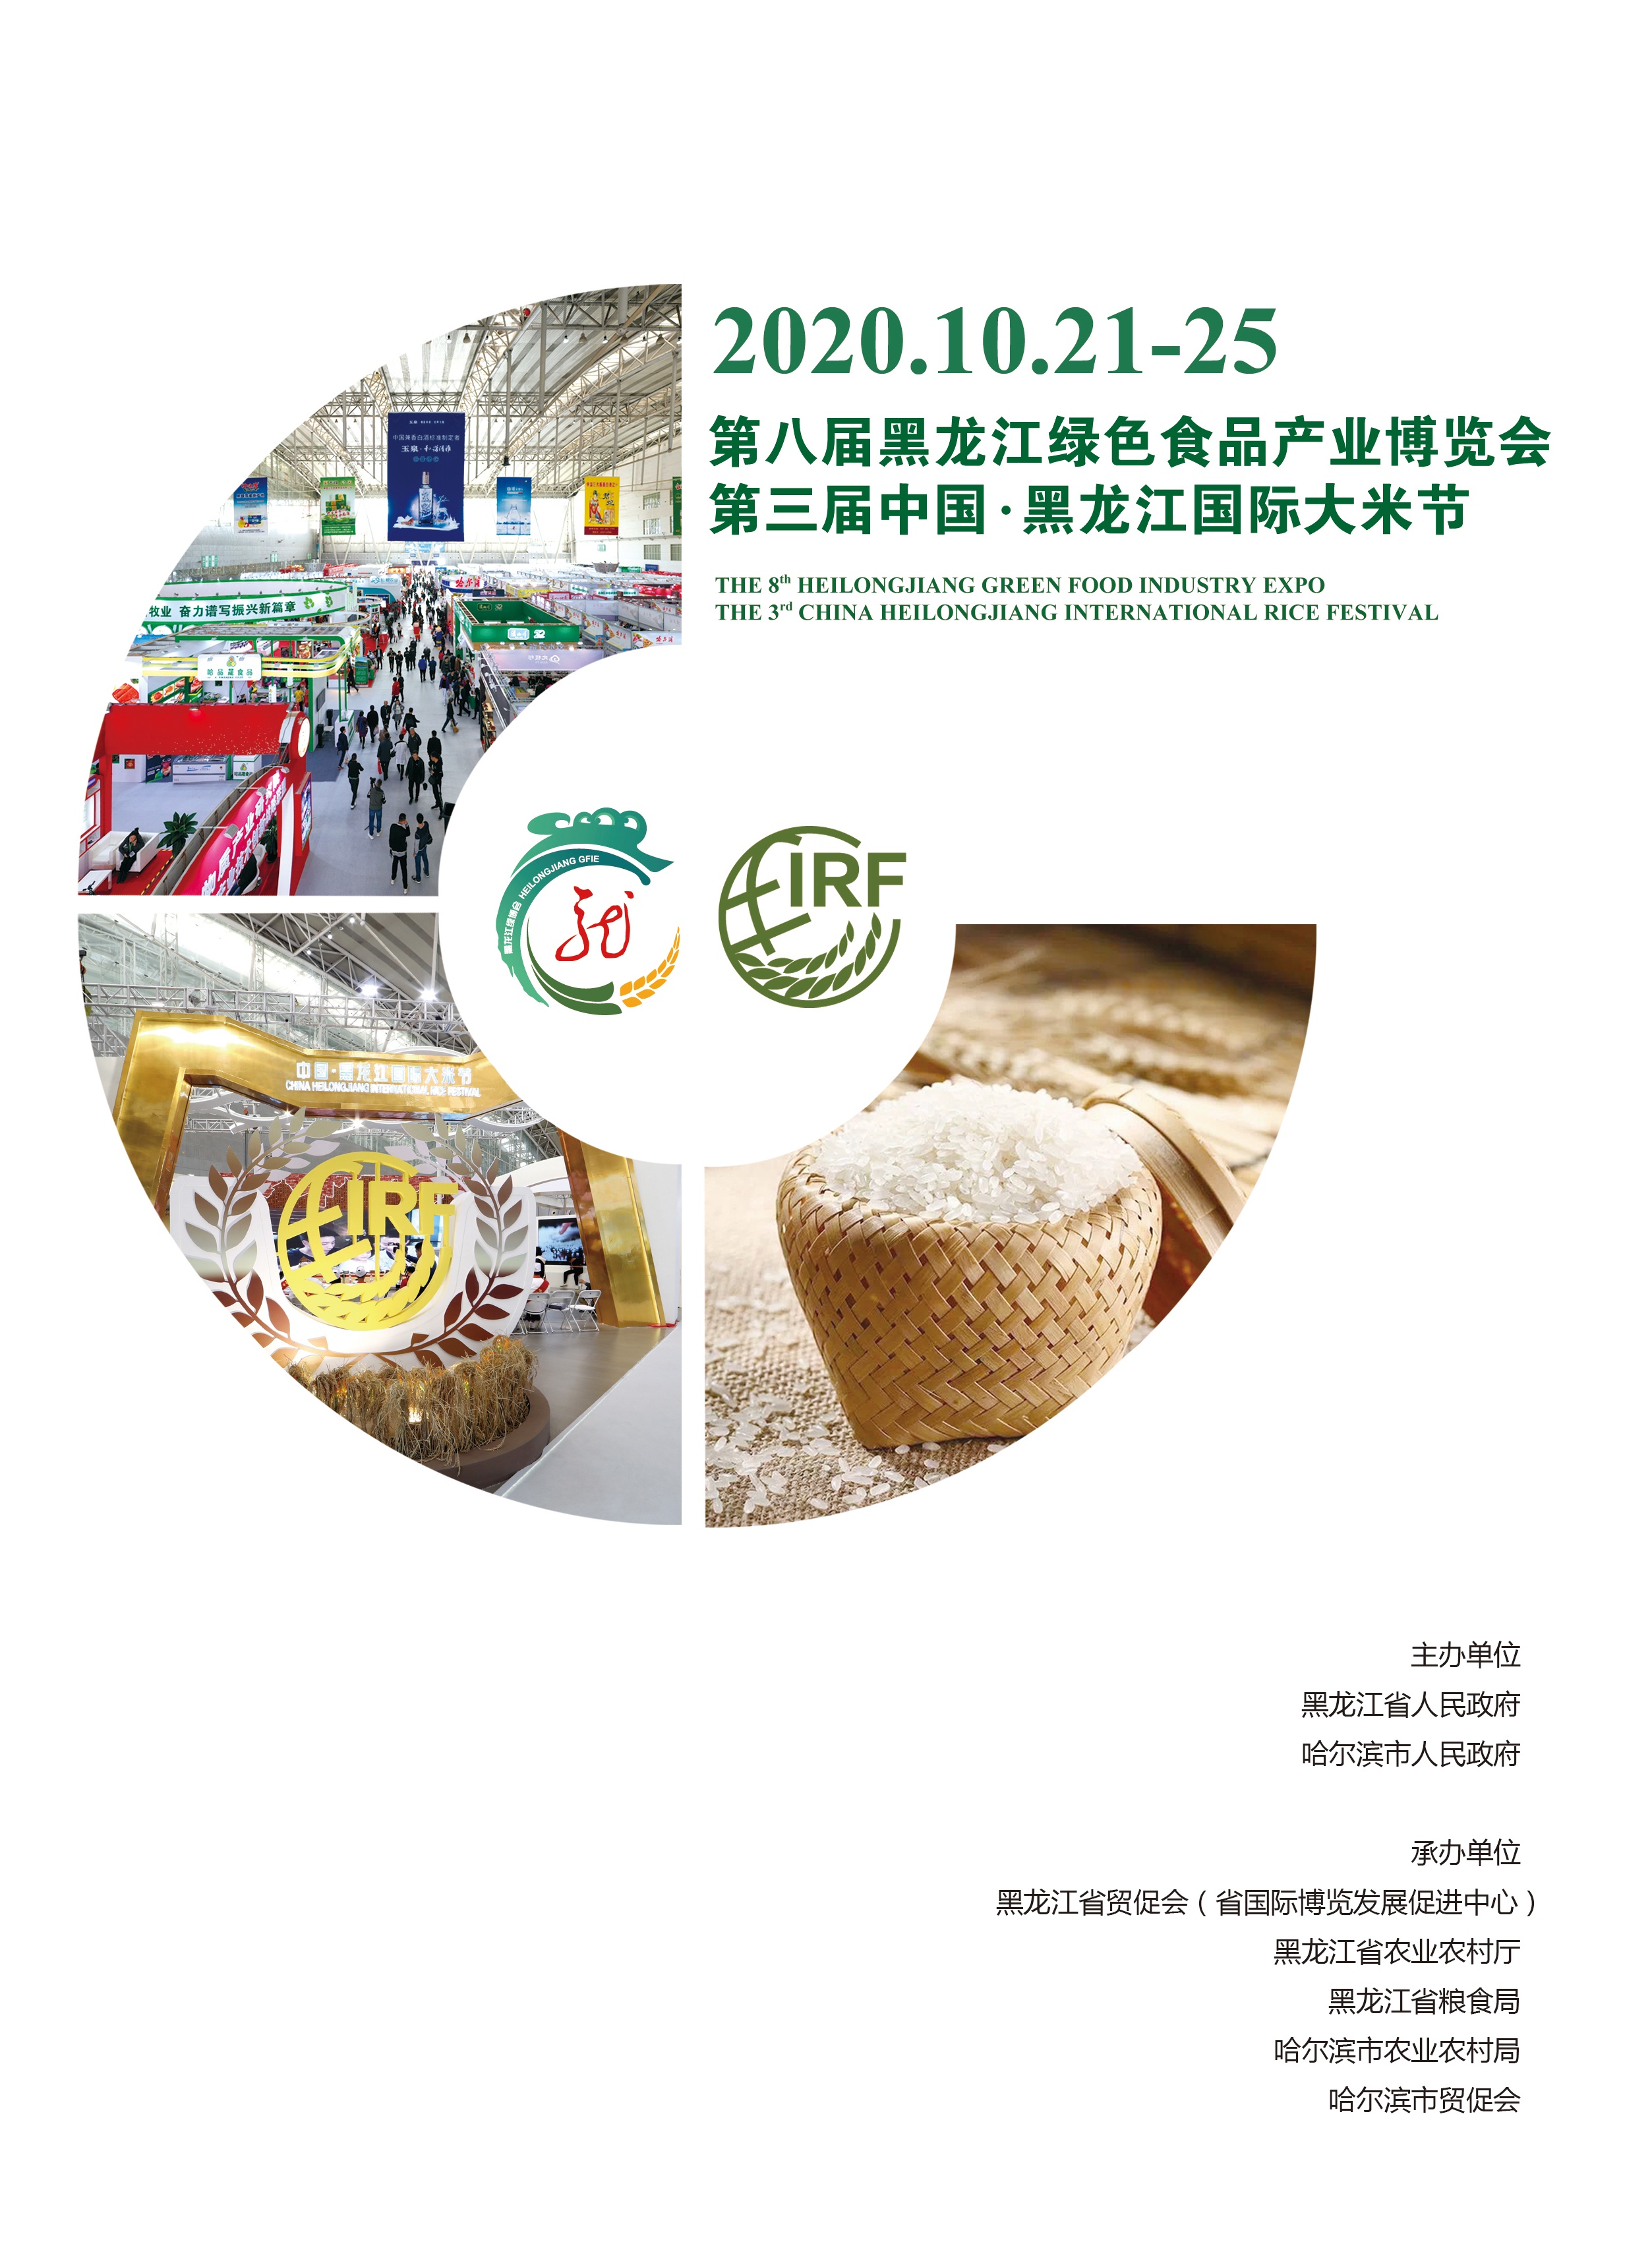 第八届黑龙江绿色食品产业博览会